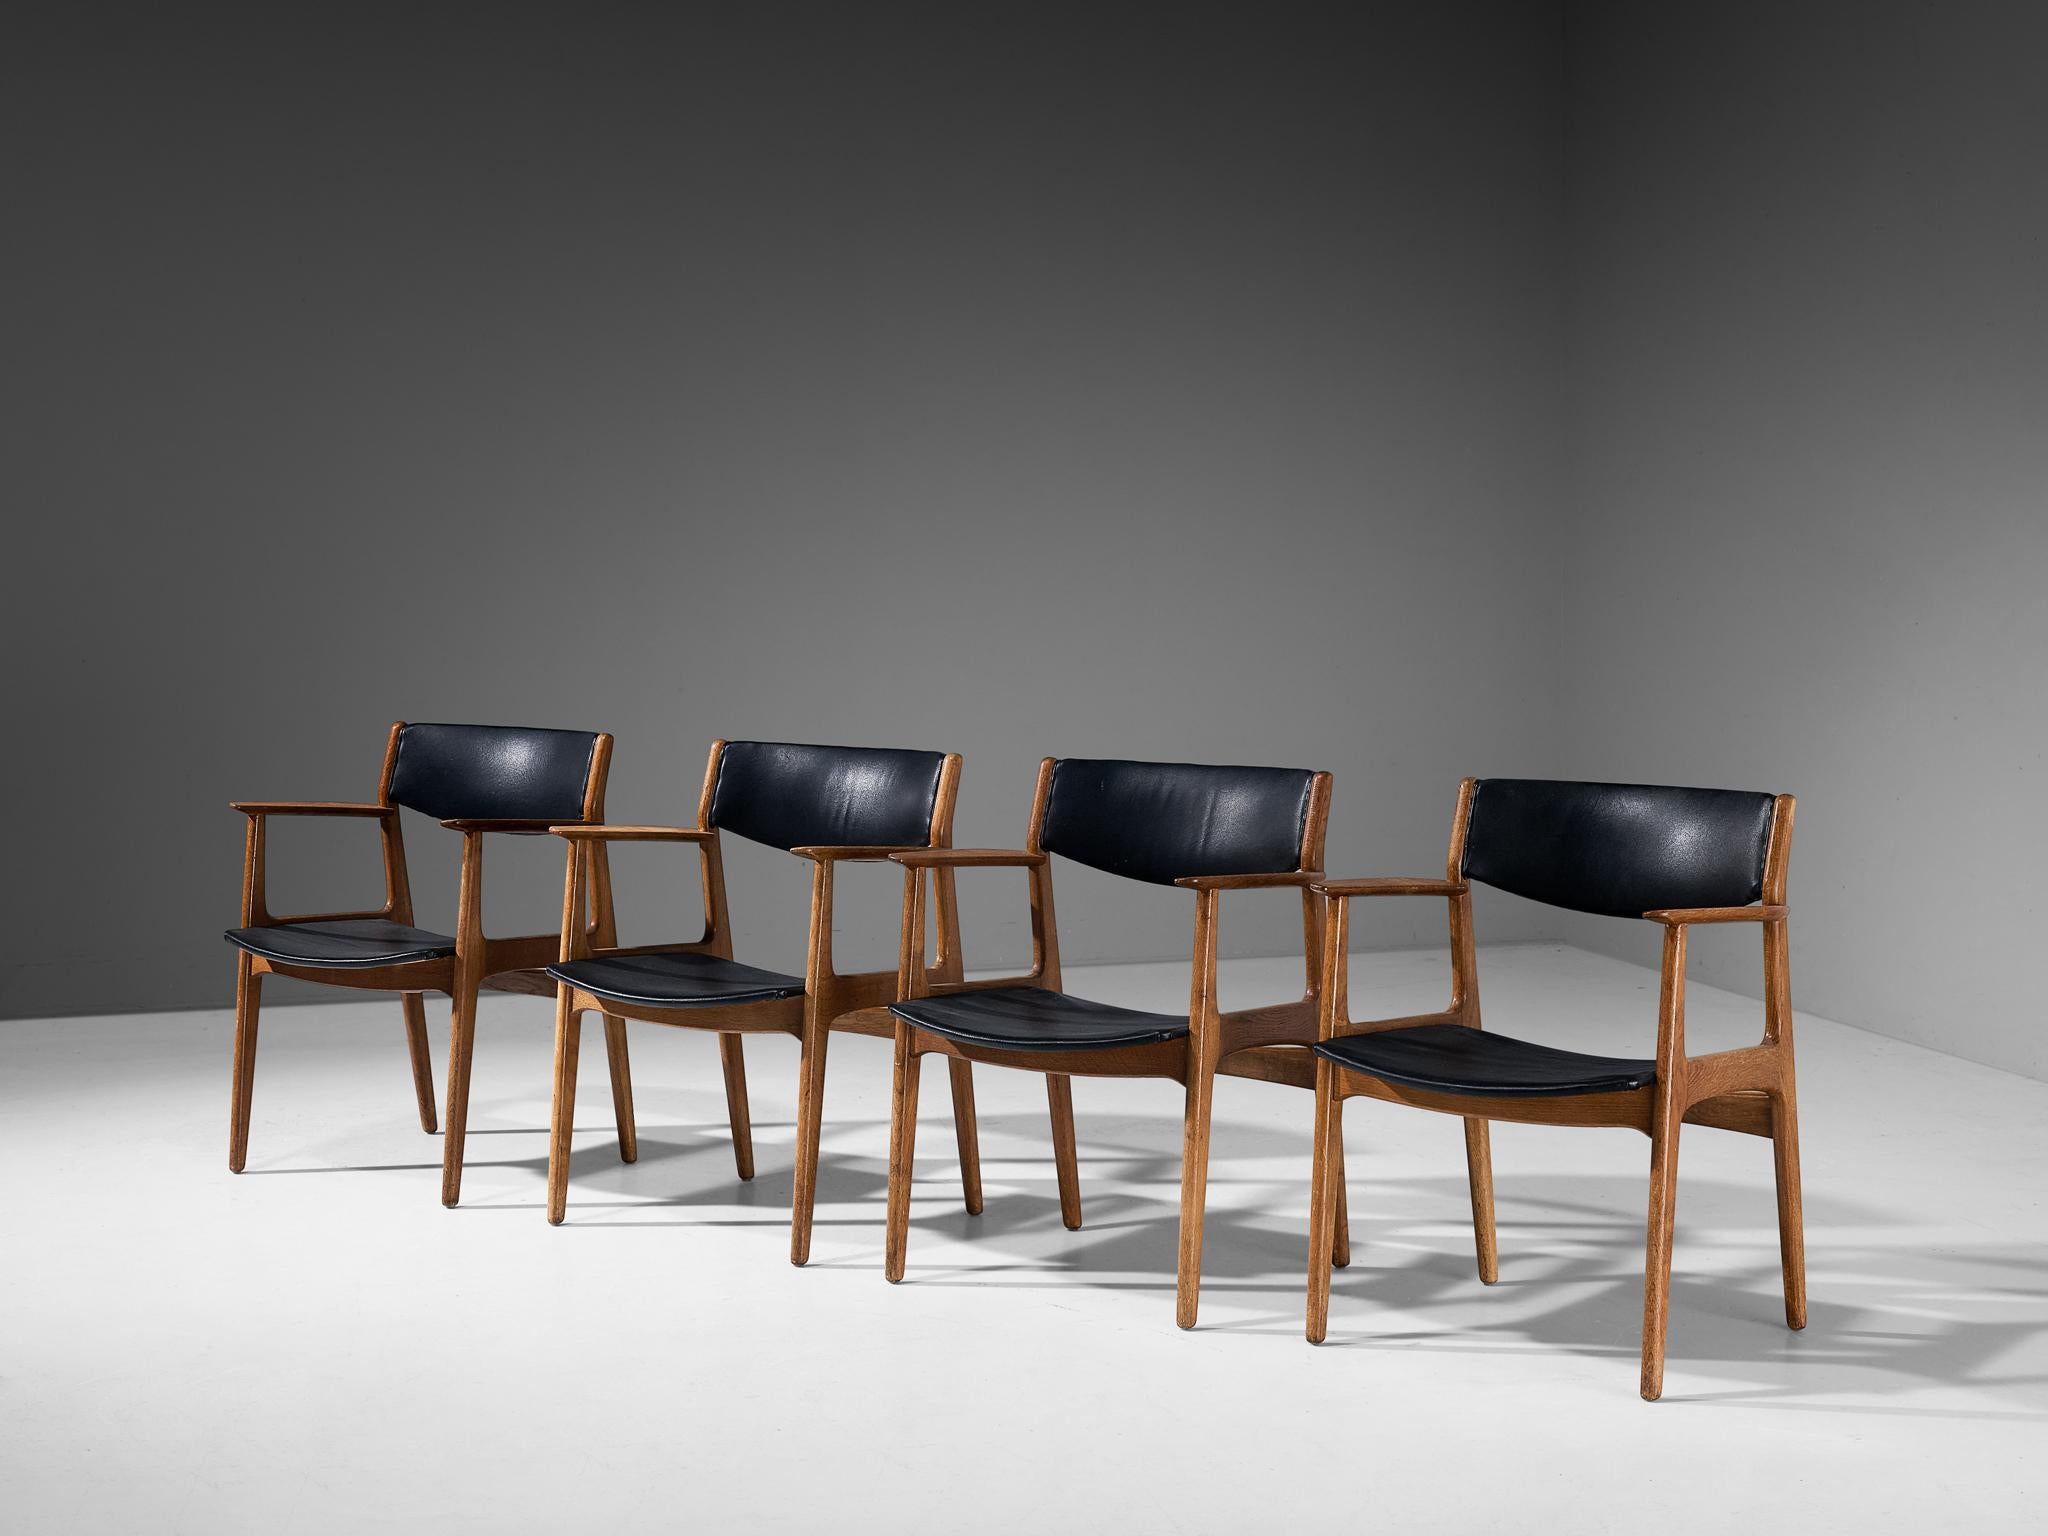 Ensemble de quatre chaises de salle à manger, similicuir, chêne, Danemark, années 1960 

Cet ensemble classique est un merveilleux exemple du design scandinave de la période du Midcentury. L'assise et le dossier sont caractérisés par des lignes